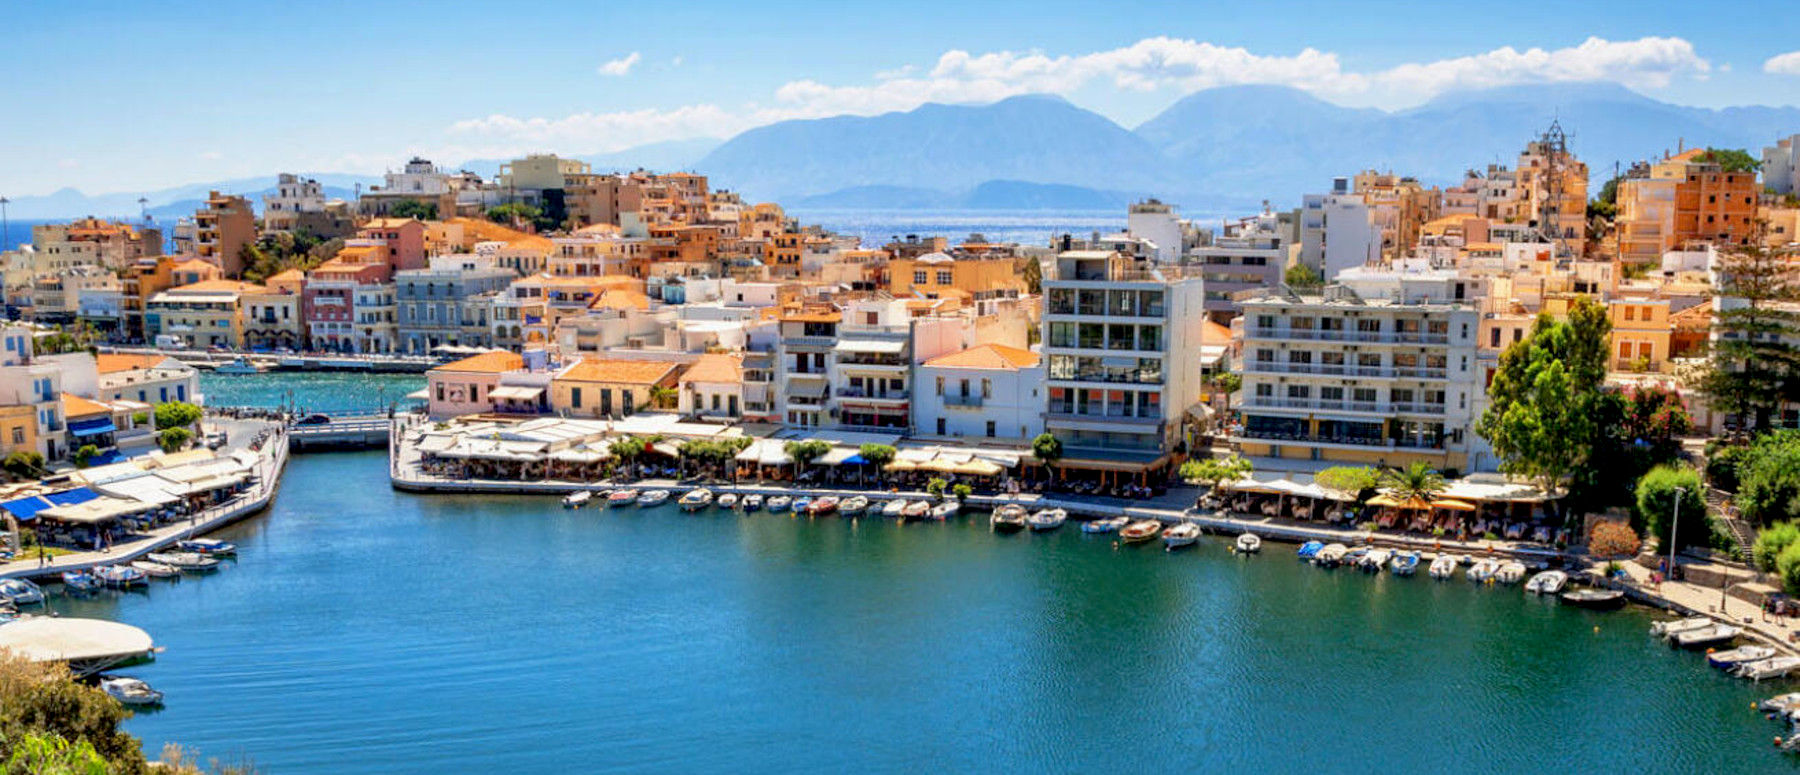 Crete St. Nikolaos City view